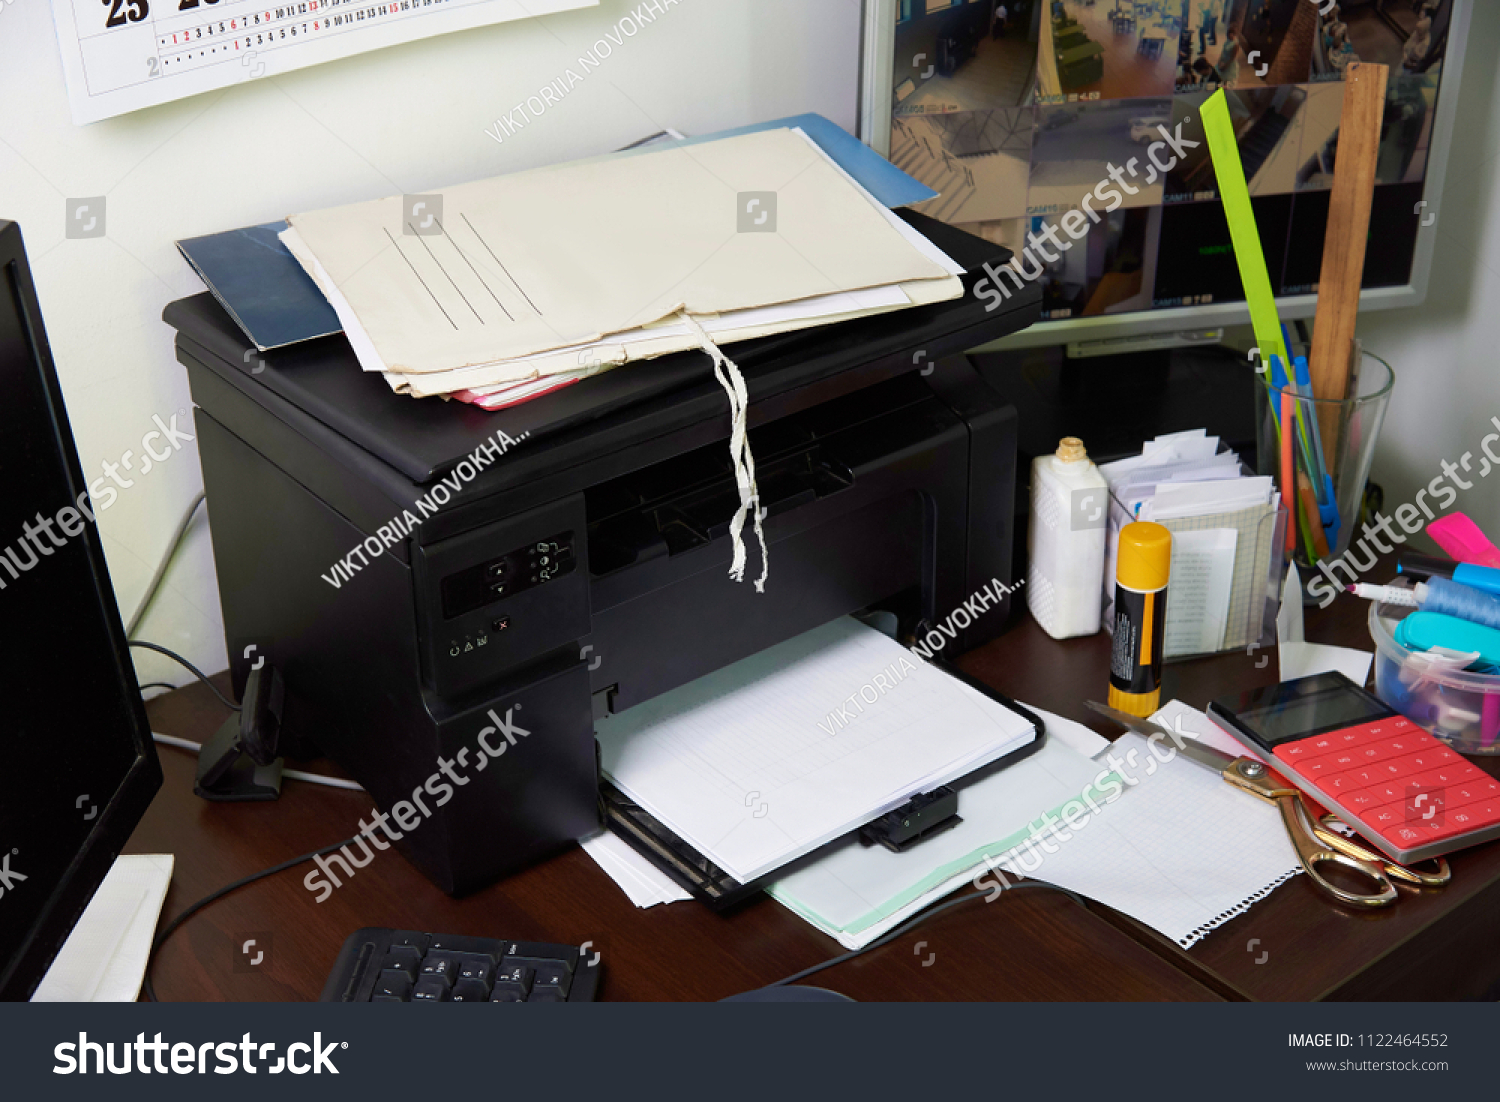 Запихнув в стол надоевшие бумаги я натянул. Стол с бумагами принтер. Бумаги на столе. Рабочий стол с бумагами. Бумажка на столе с компьютером.